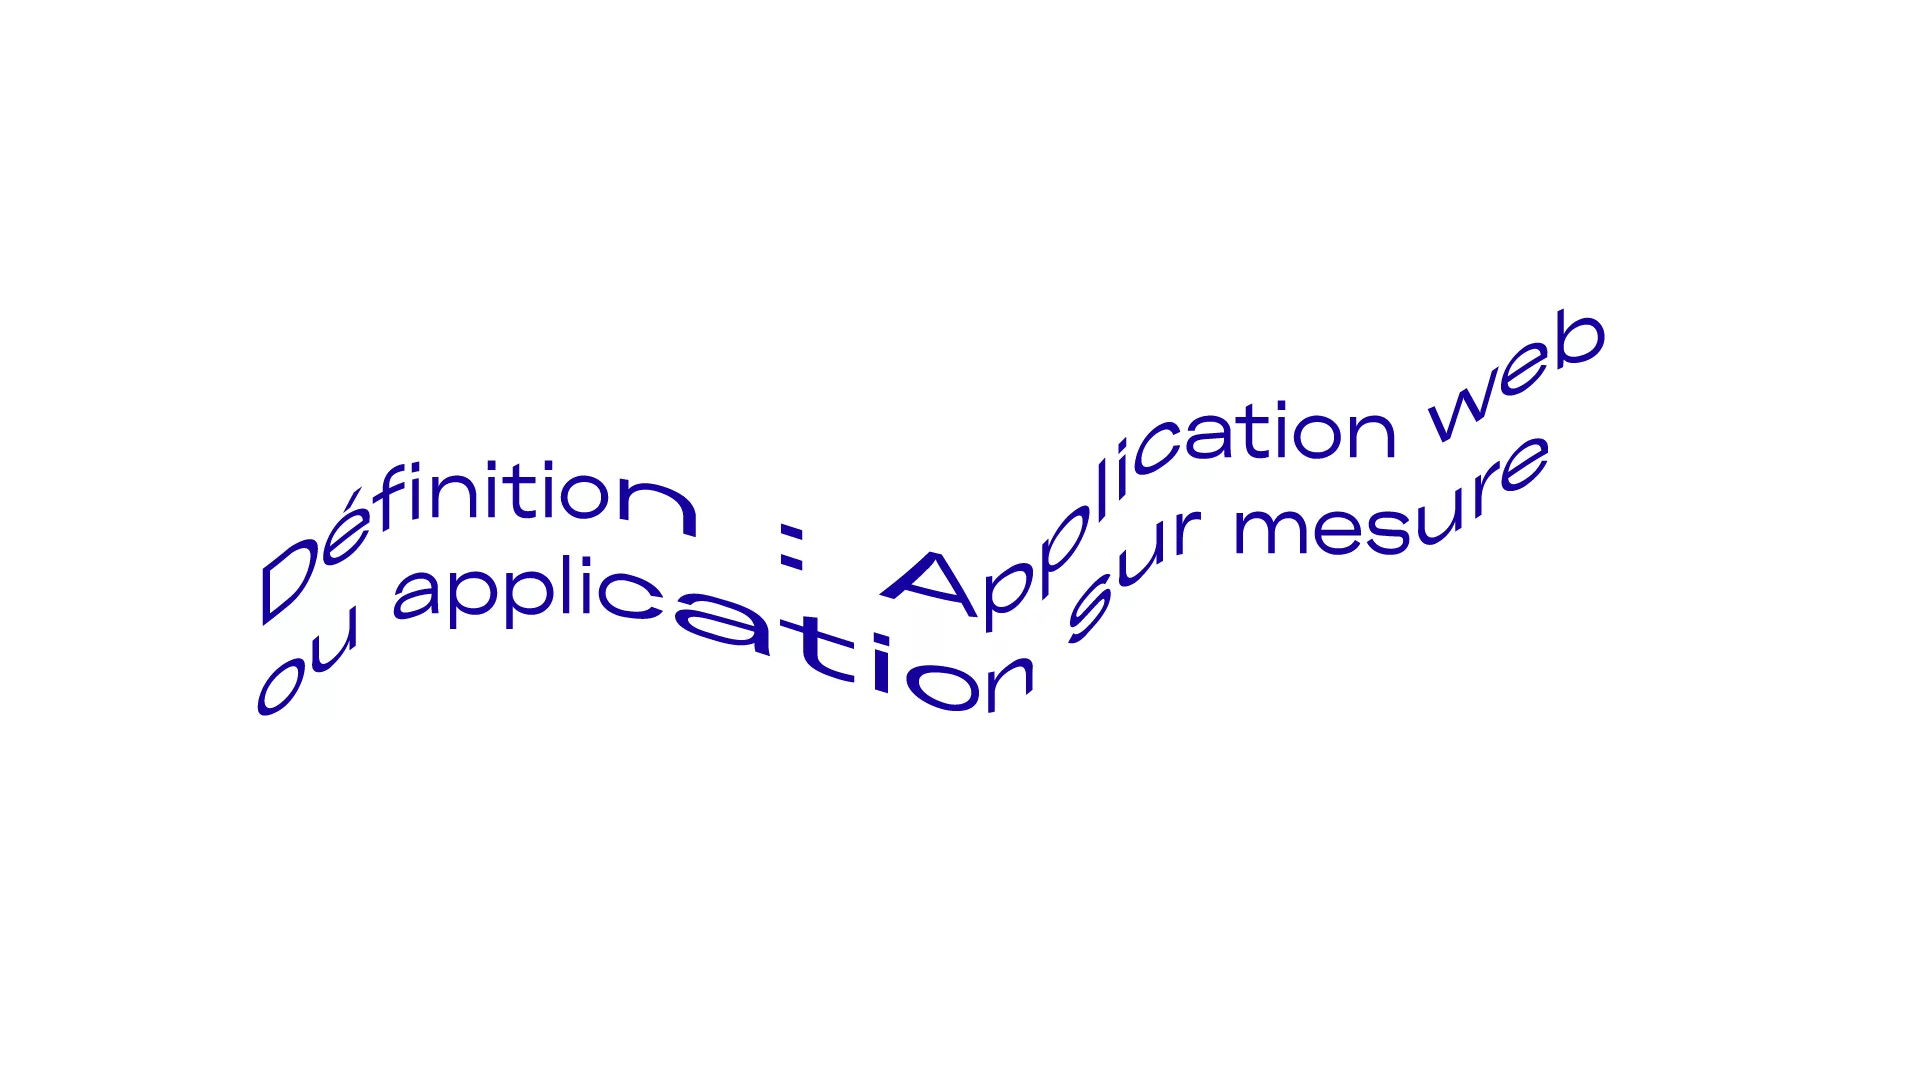 Définition : Application web ou application sur mesure